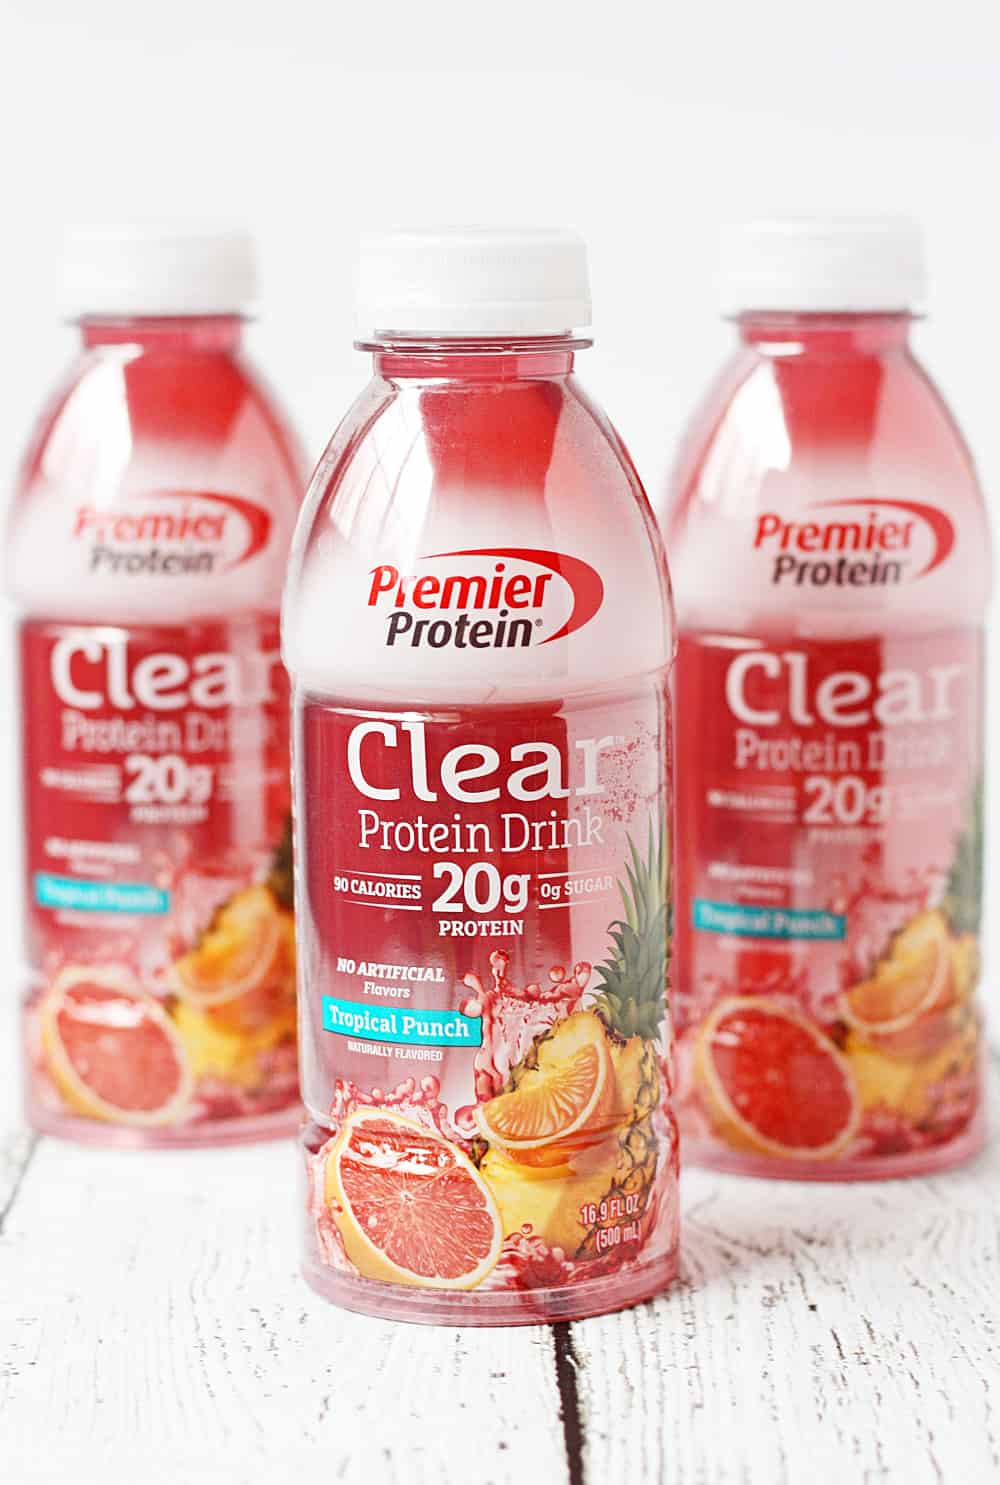 Premier Protein Clear Protein Drink bottle